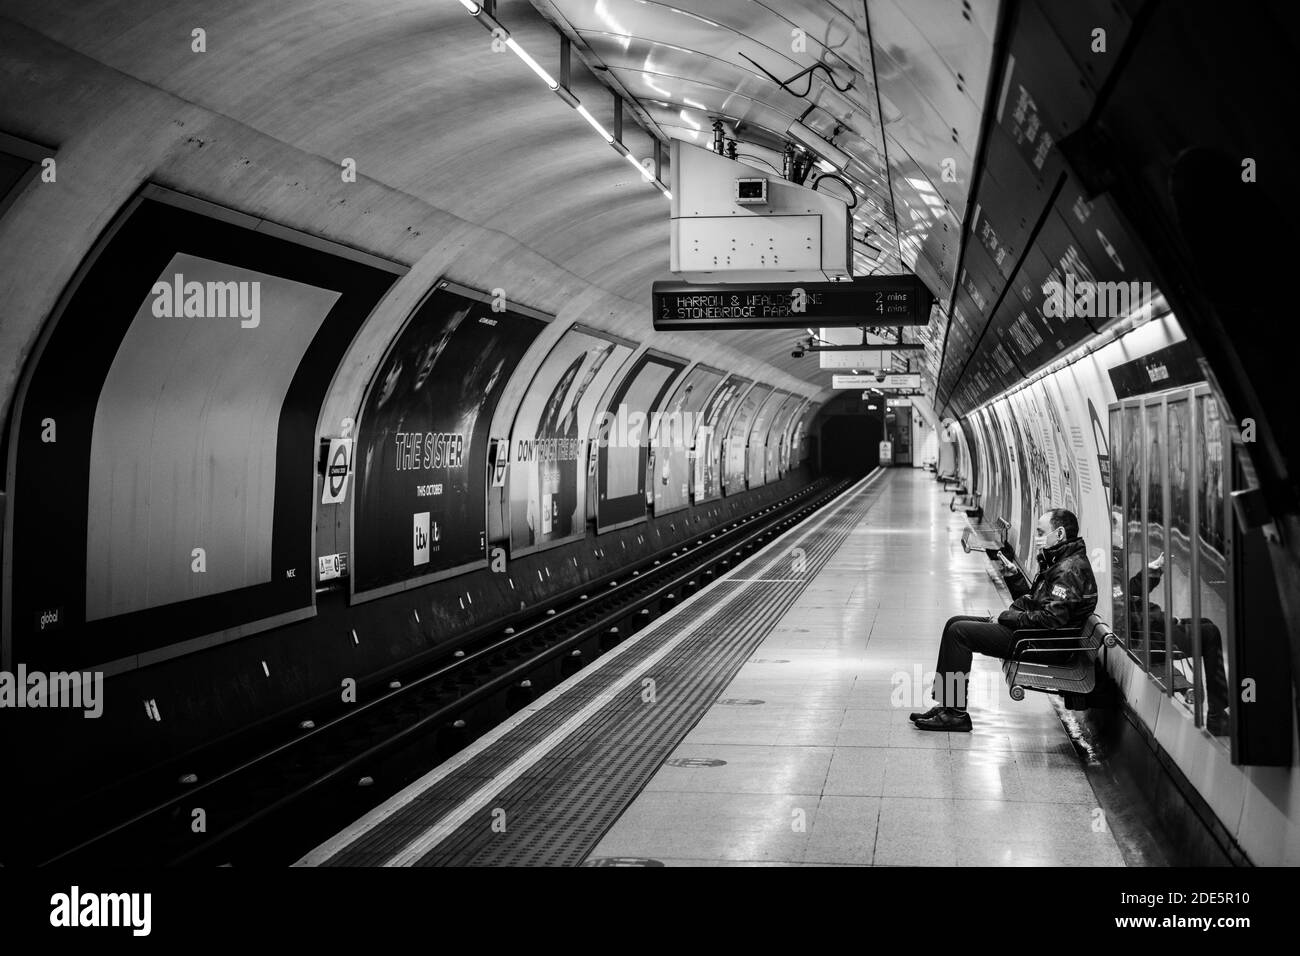 Ruhige, leere Londoner U-Bahn-Station in Coronavirus Covid-19 Pandemiesperre, mit einer einzigen Person auf dem Bahnsteig des öffentlichen Verkehrs während des Reiseverbots Stockfoto